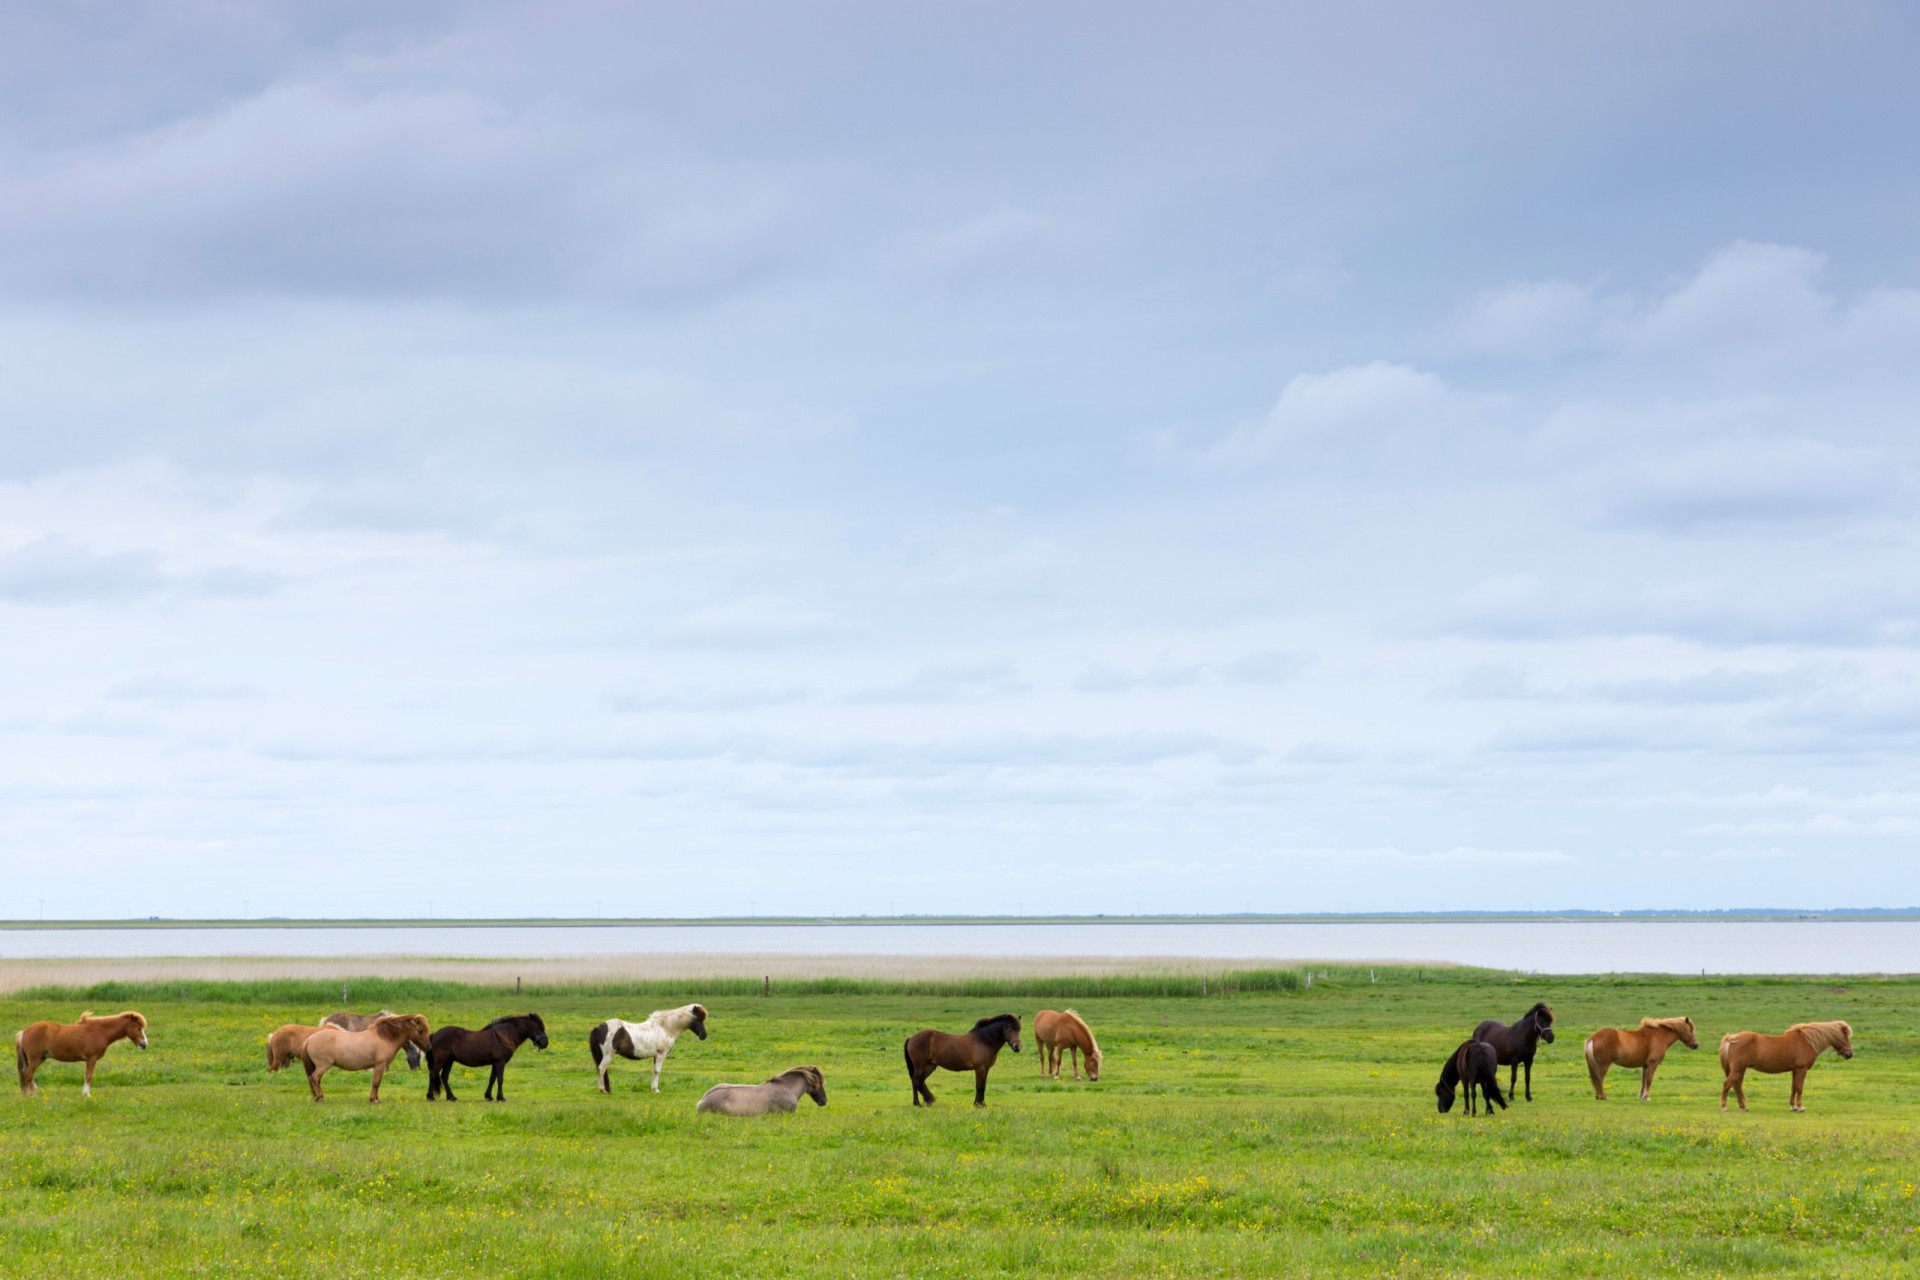 <p>Les îles danoises de Rømø, dans la mer des Wadden, Mandø, et Fanø forment une partie du parc national, qui est l'un des plus grands systèmes continus de vasières et de sable intertidal. Le parc est réputé pour sa nature unique, ses chevaux et ses phoques tachetés.</p><p><a href="https://www.msn.com/fr-fr/community/channel/vid-7xx8mnucu55yw63we9va2gwr7uihbxwc68fxqp25x6tg4ftibpra?cvid=94631541bc0f4f89bfd59158d696ad7e">Suivez-nous et accédez tous les jours à du contenu exclusif</a></p>